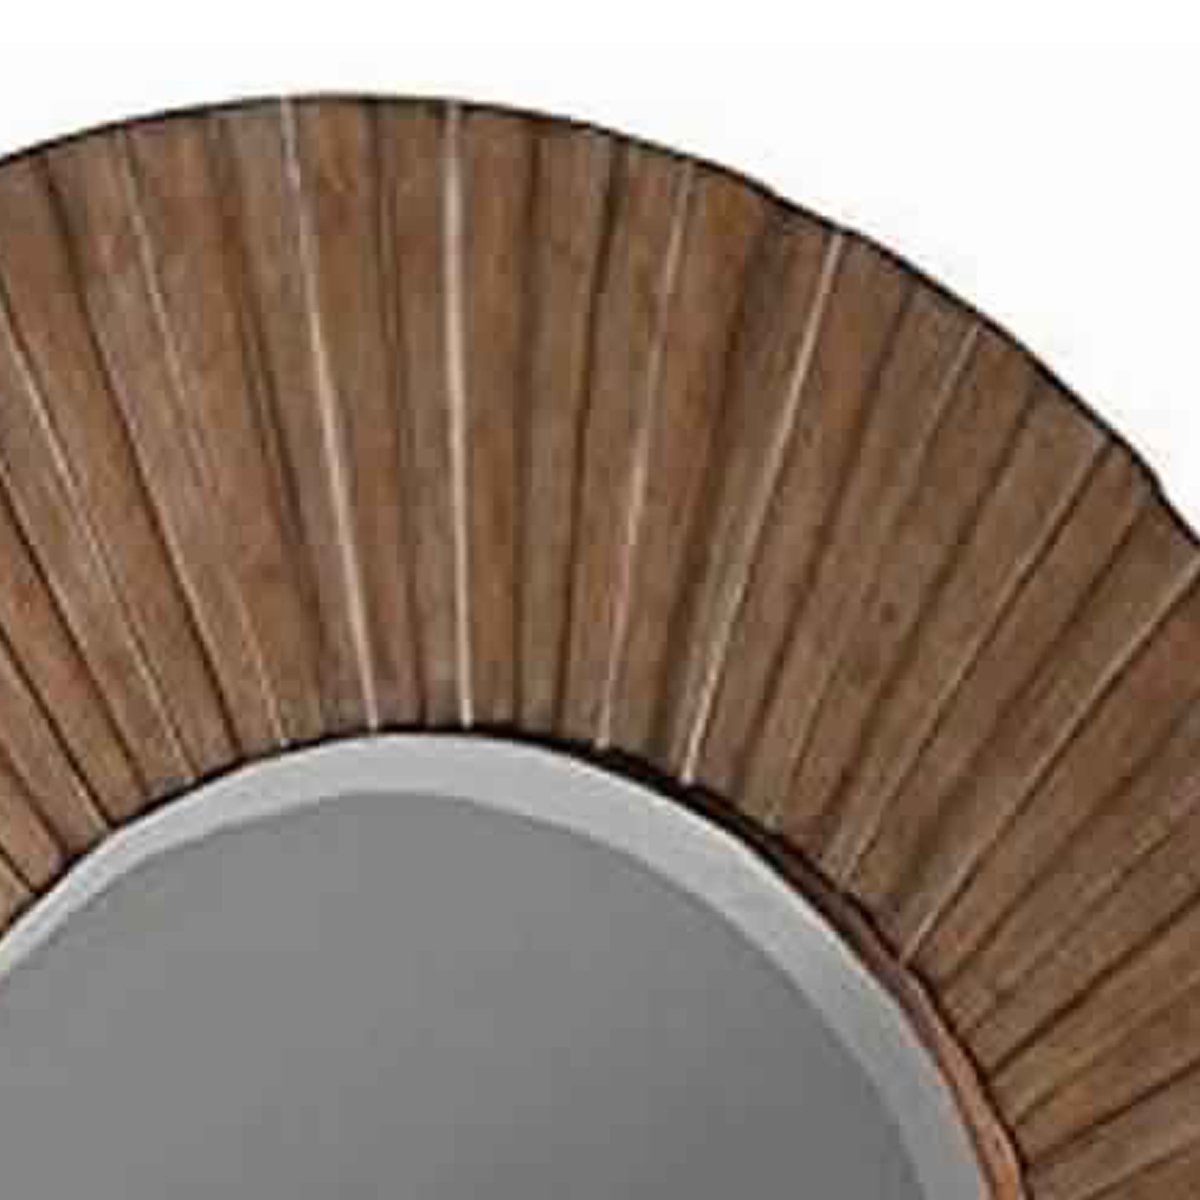 Transitional Sunburst Round Mirror With Wooden Frame, Brown- Saltoro Sherpi